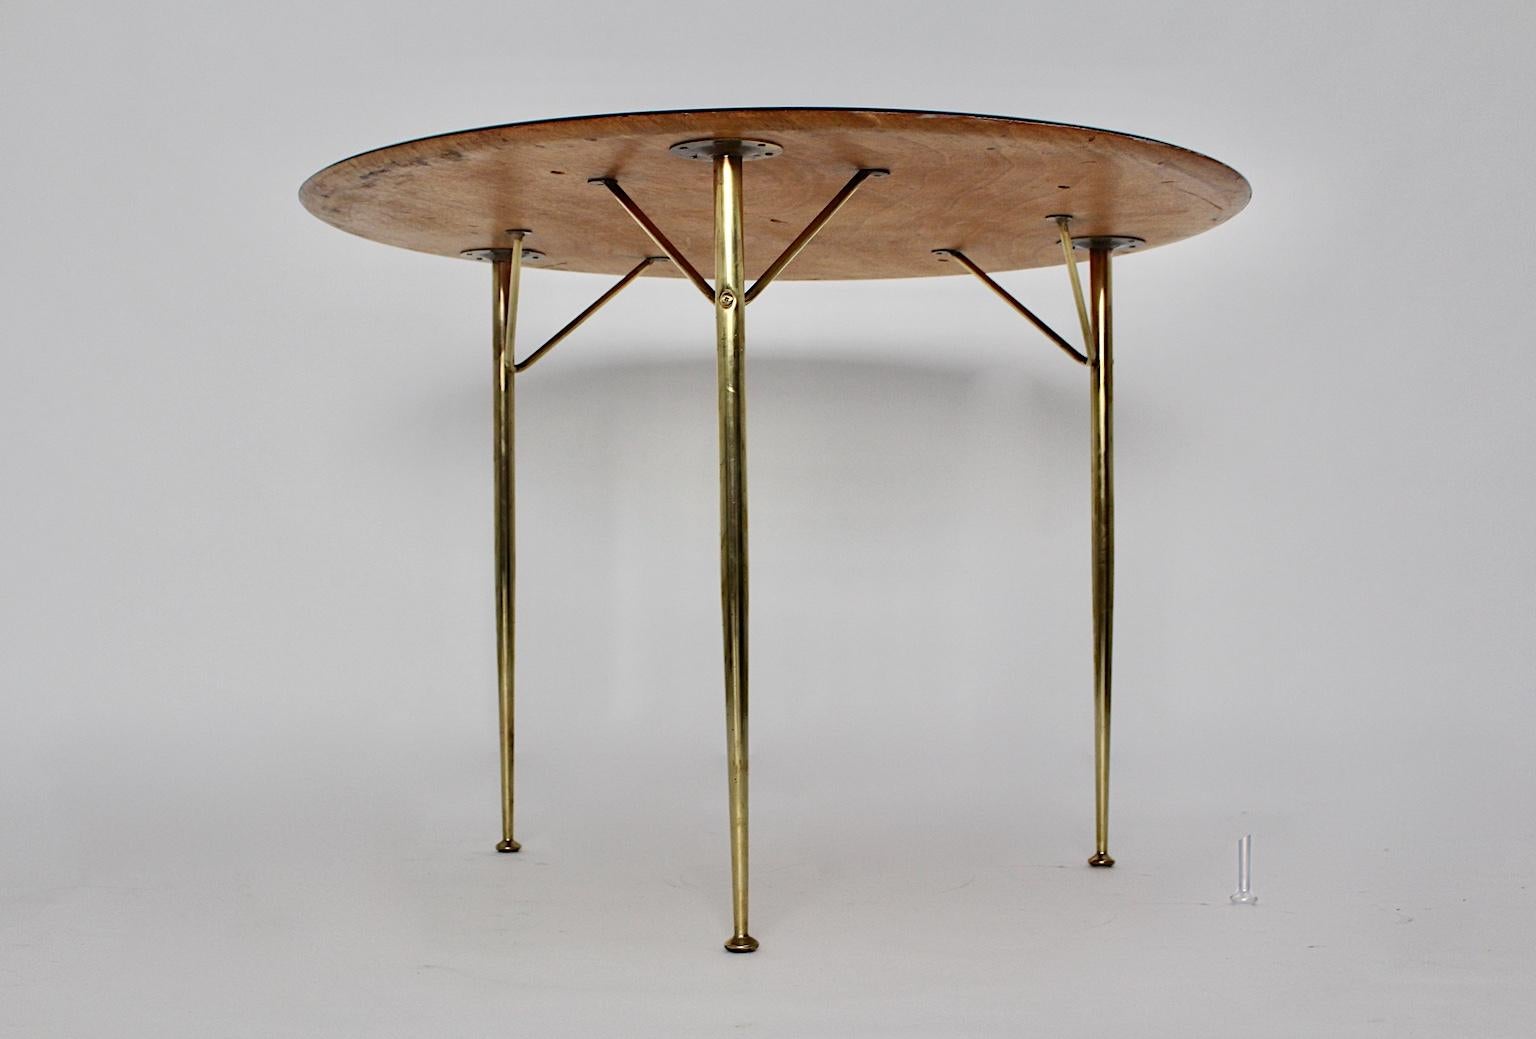 Table de salle à manger ou table centrale vintage moderne scandinave d'Arne Jacobsen pour Fritz Hansen, qui a été créée et fabriquée au Danemark dans les années 1950.
La table de salle à manger présente une base en laiton à trois pieds et un nouveau